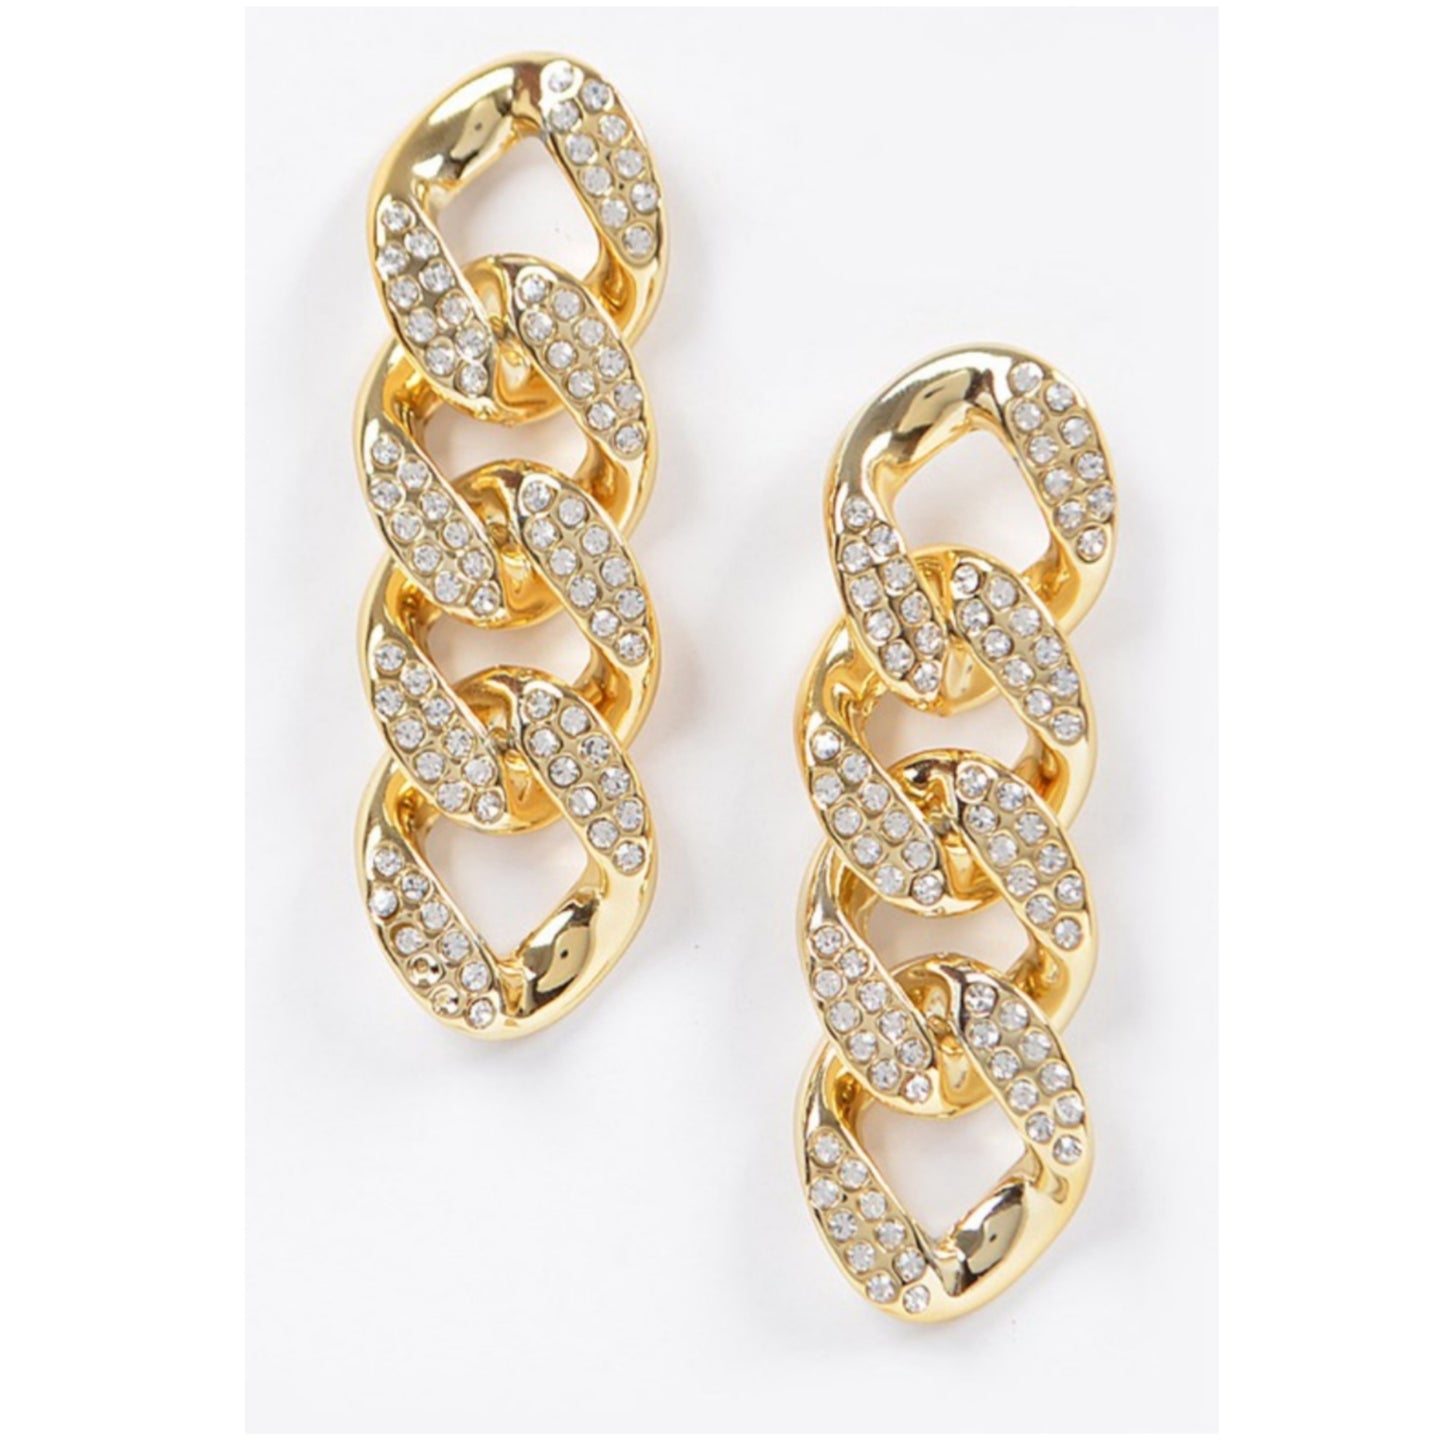 Rhinestone Chain Link Earrings